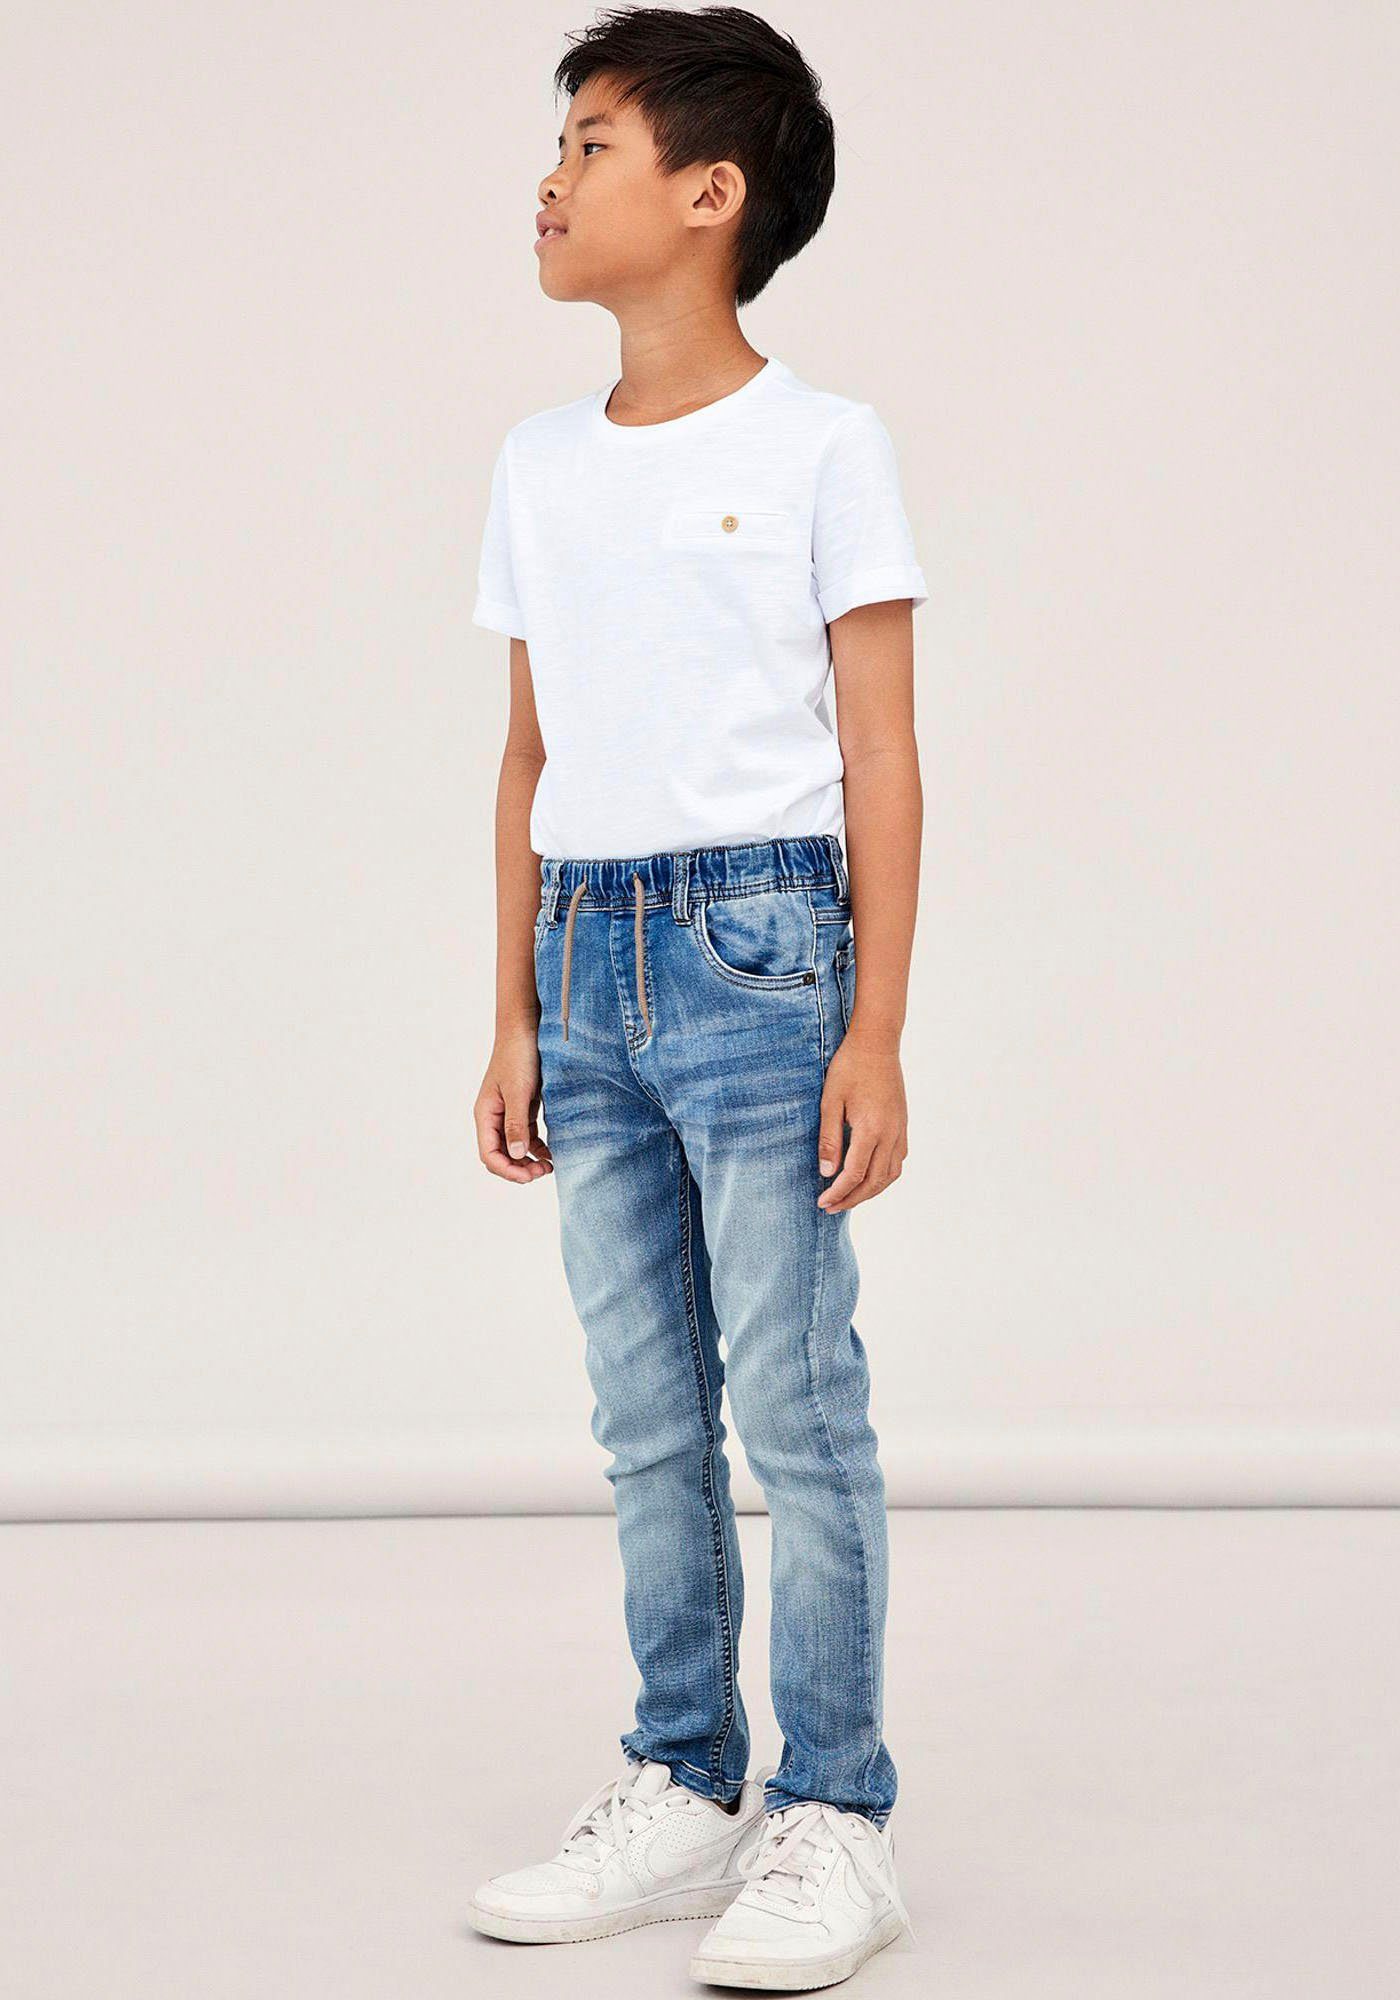 Jungen Stretch Jeans online kaufen | OTTO